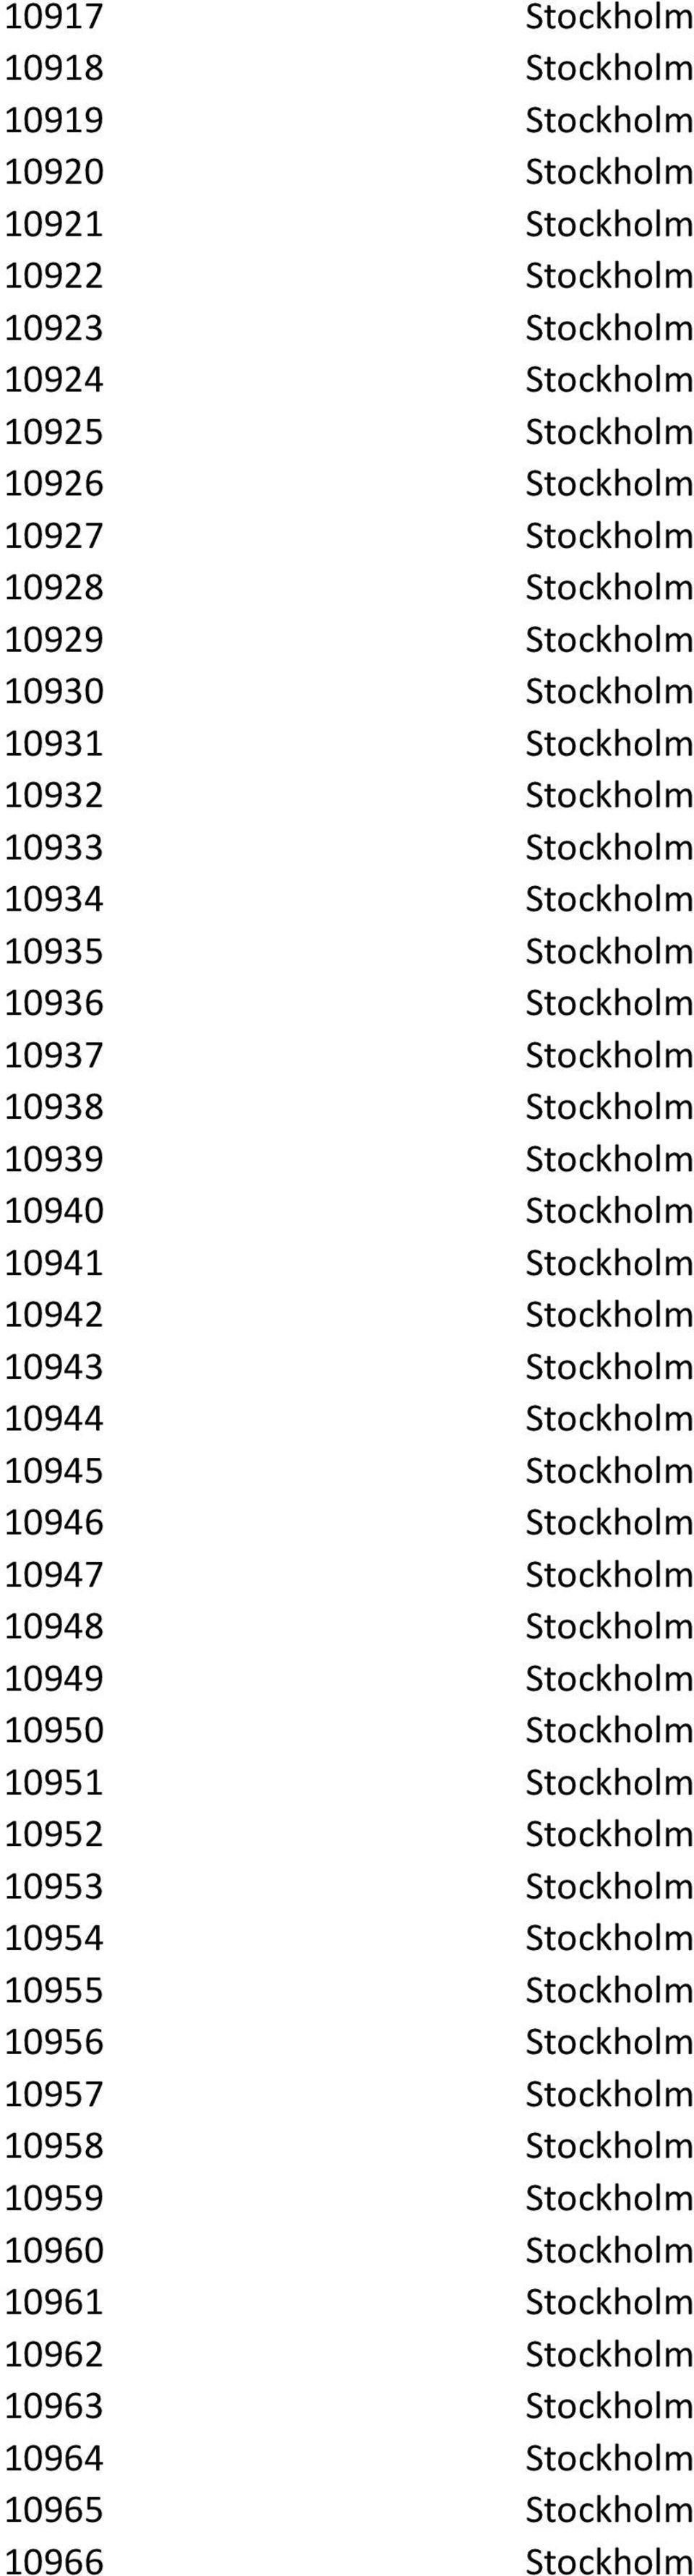 Stockholm 10942 Stockholm 10943 Stockholm 10944 Stockholm 10945 Stockholm 10946 Stockholm 10947 Stockholm 10948 Stockholm 10949 Stockholm 10950 Stockholm 10951 Stockholm 10952 Stockholm 10953